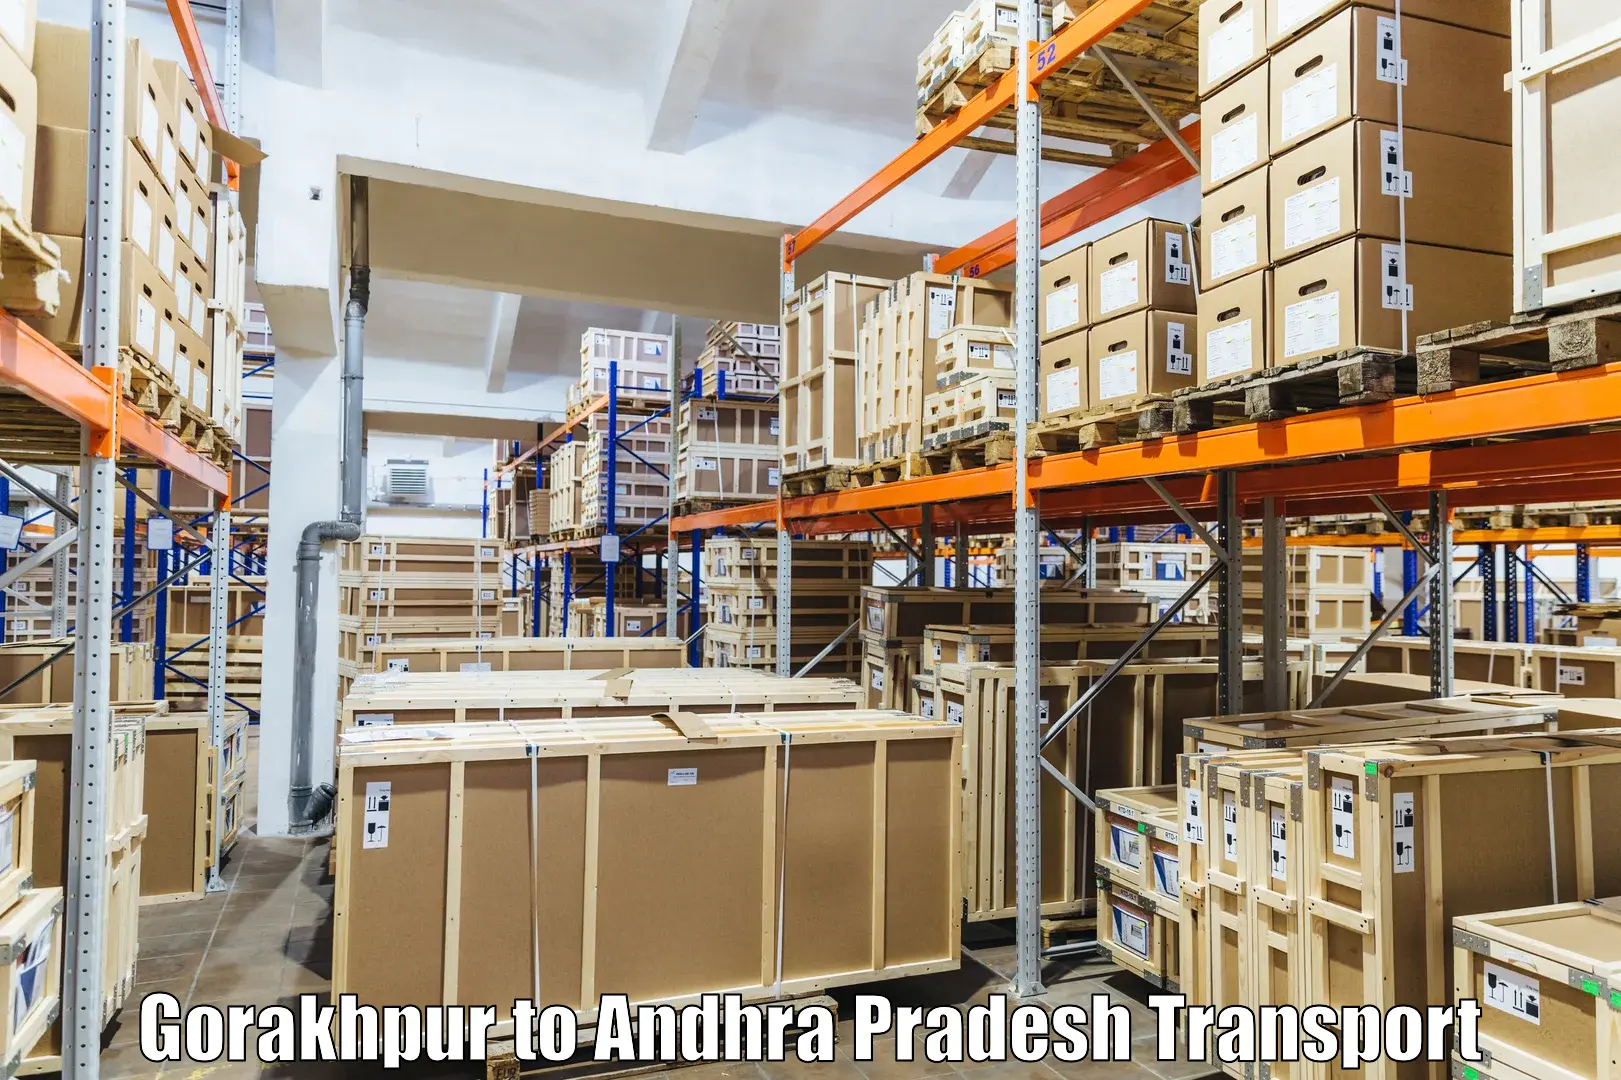 Vehicle parcel service Gorakhpur to Chodavaram